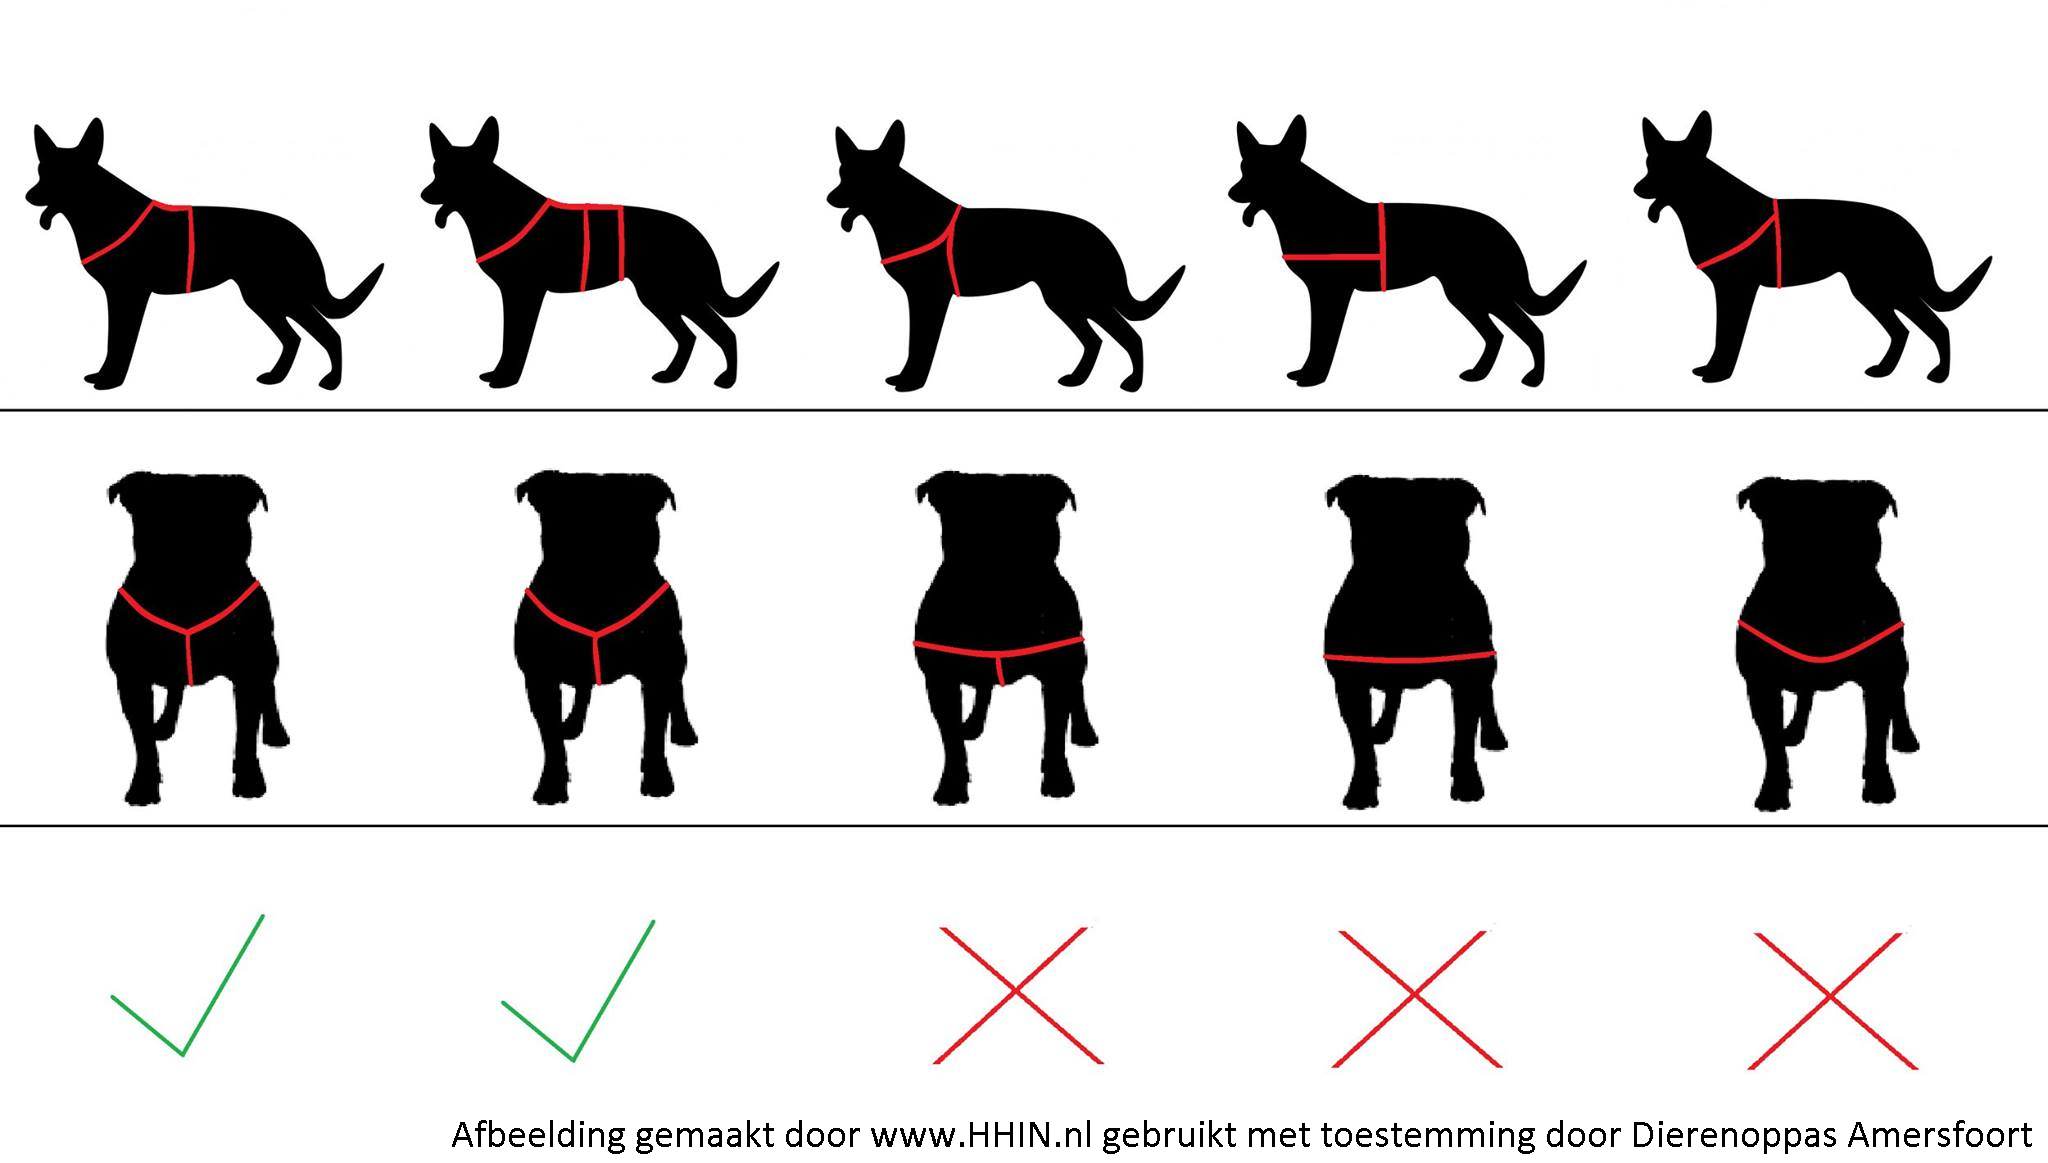 voor Eigenaardig Moderniseren Het beste hondentuig • Dit wist jij niet! • Tips & tuigjes hond vergelijken